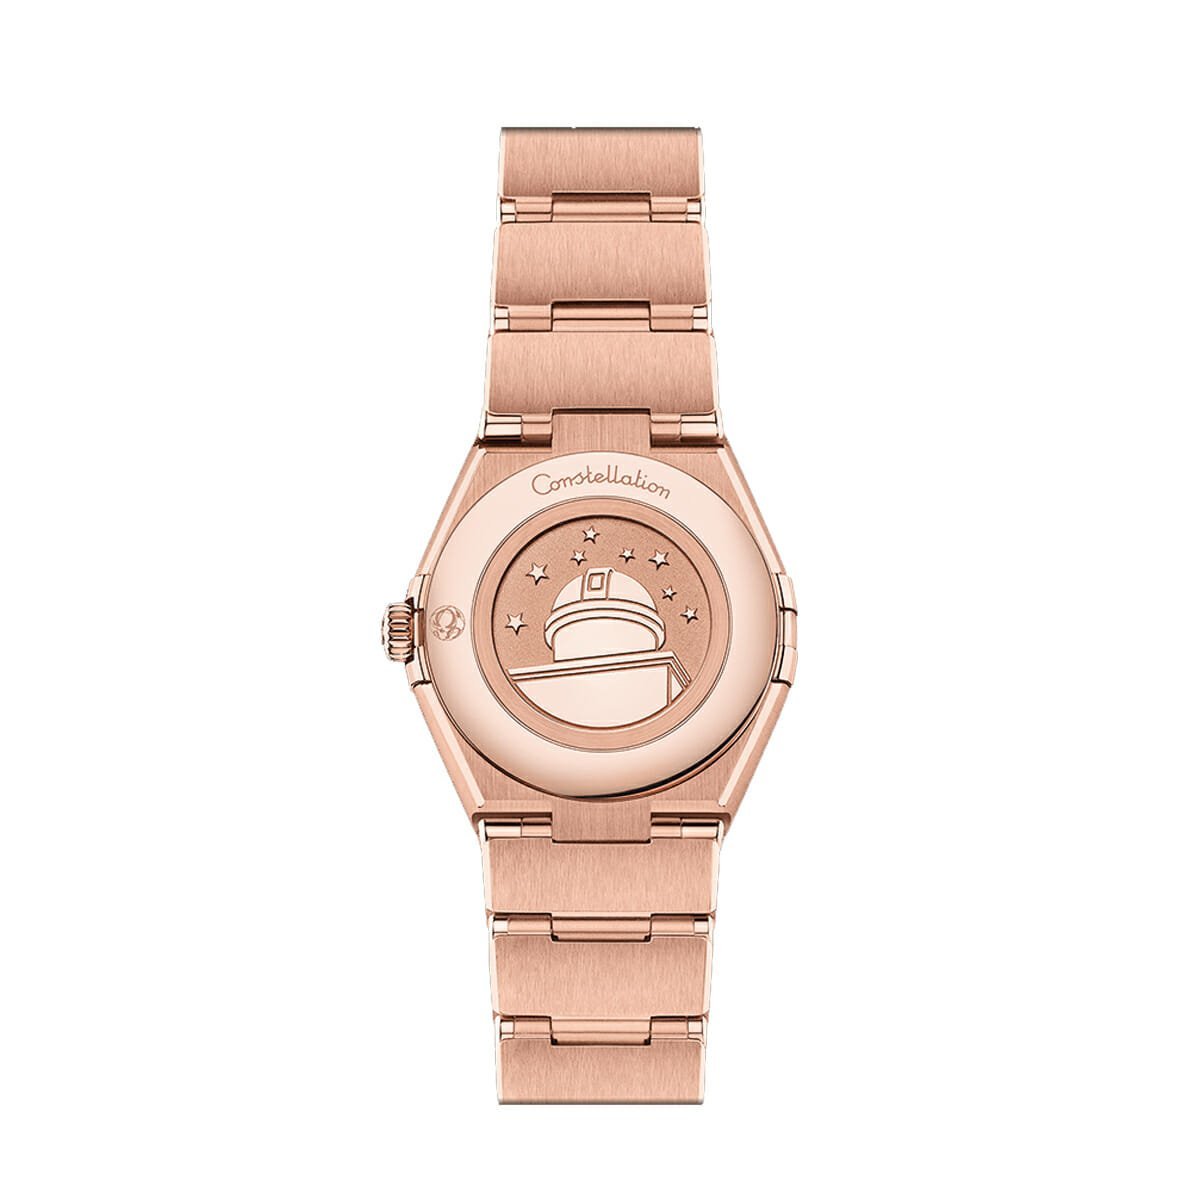 Constellation Quartz 28mm Sedna™ Gold Watch